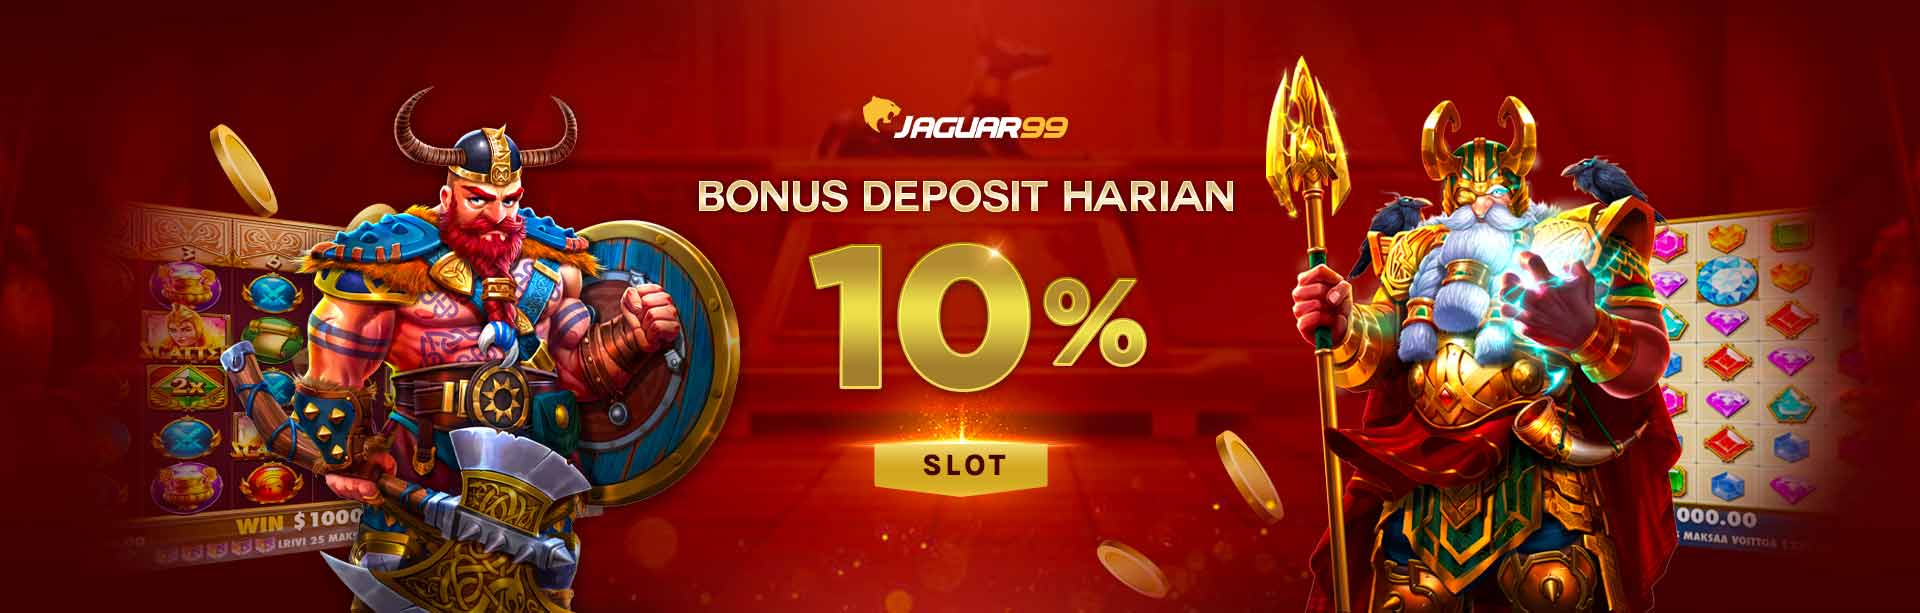 Jaguar99 Bonus Deposit Harian 10% Slot